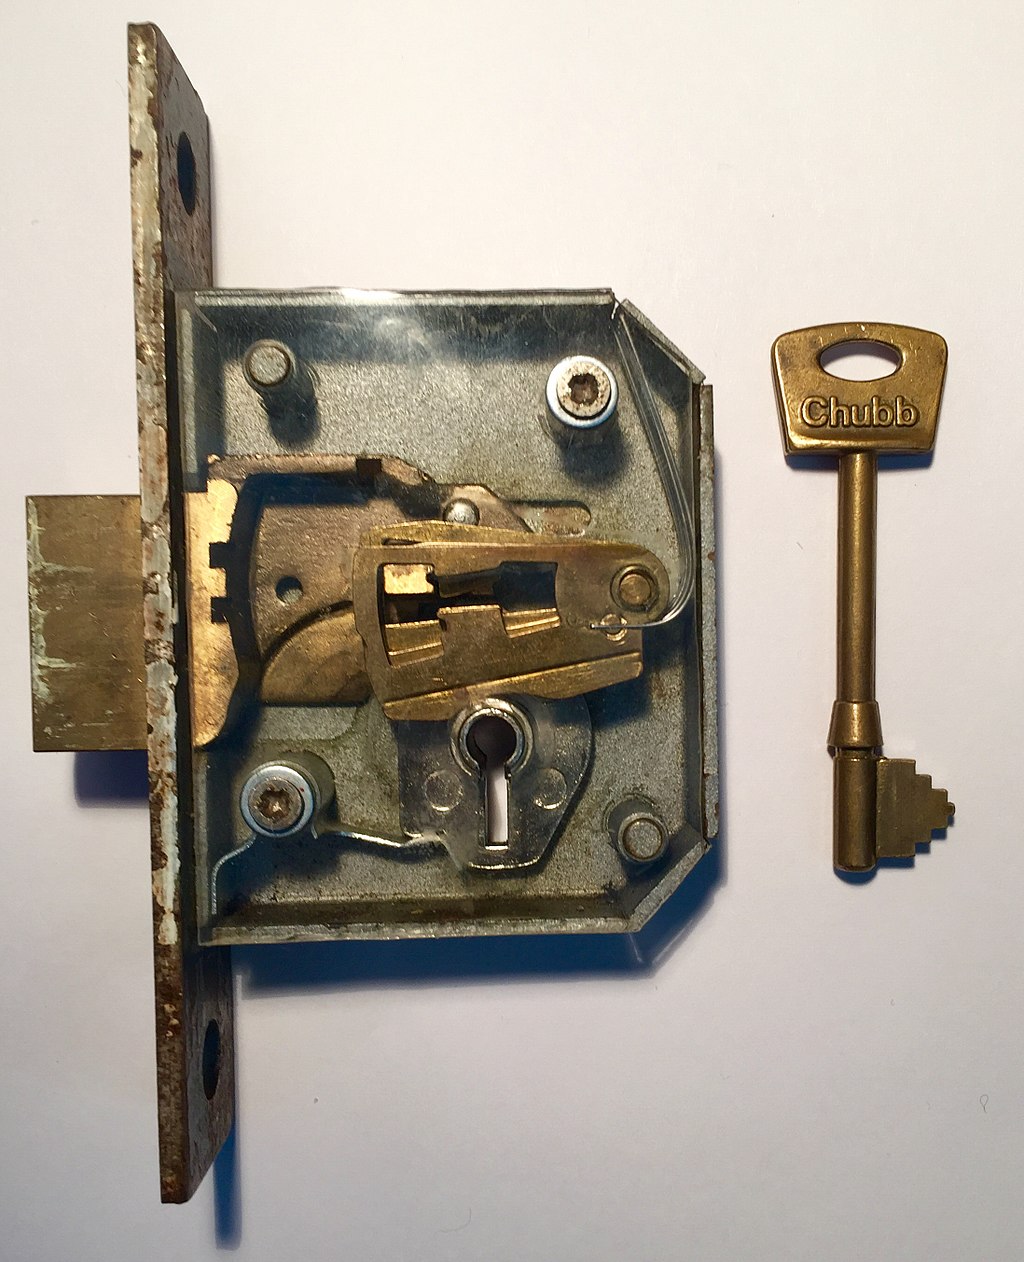 Nøkkel til dør fra 1933 er forsvunnet -  mulig å ta ut låsen og gå til låsesmed? - 940A745C-1335-49EF-8876-CE65CC8544F7.png - Abelo